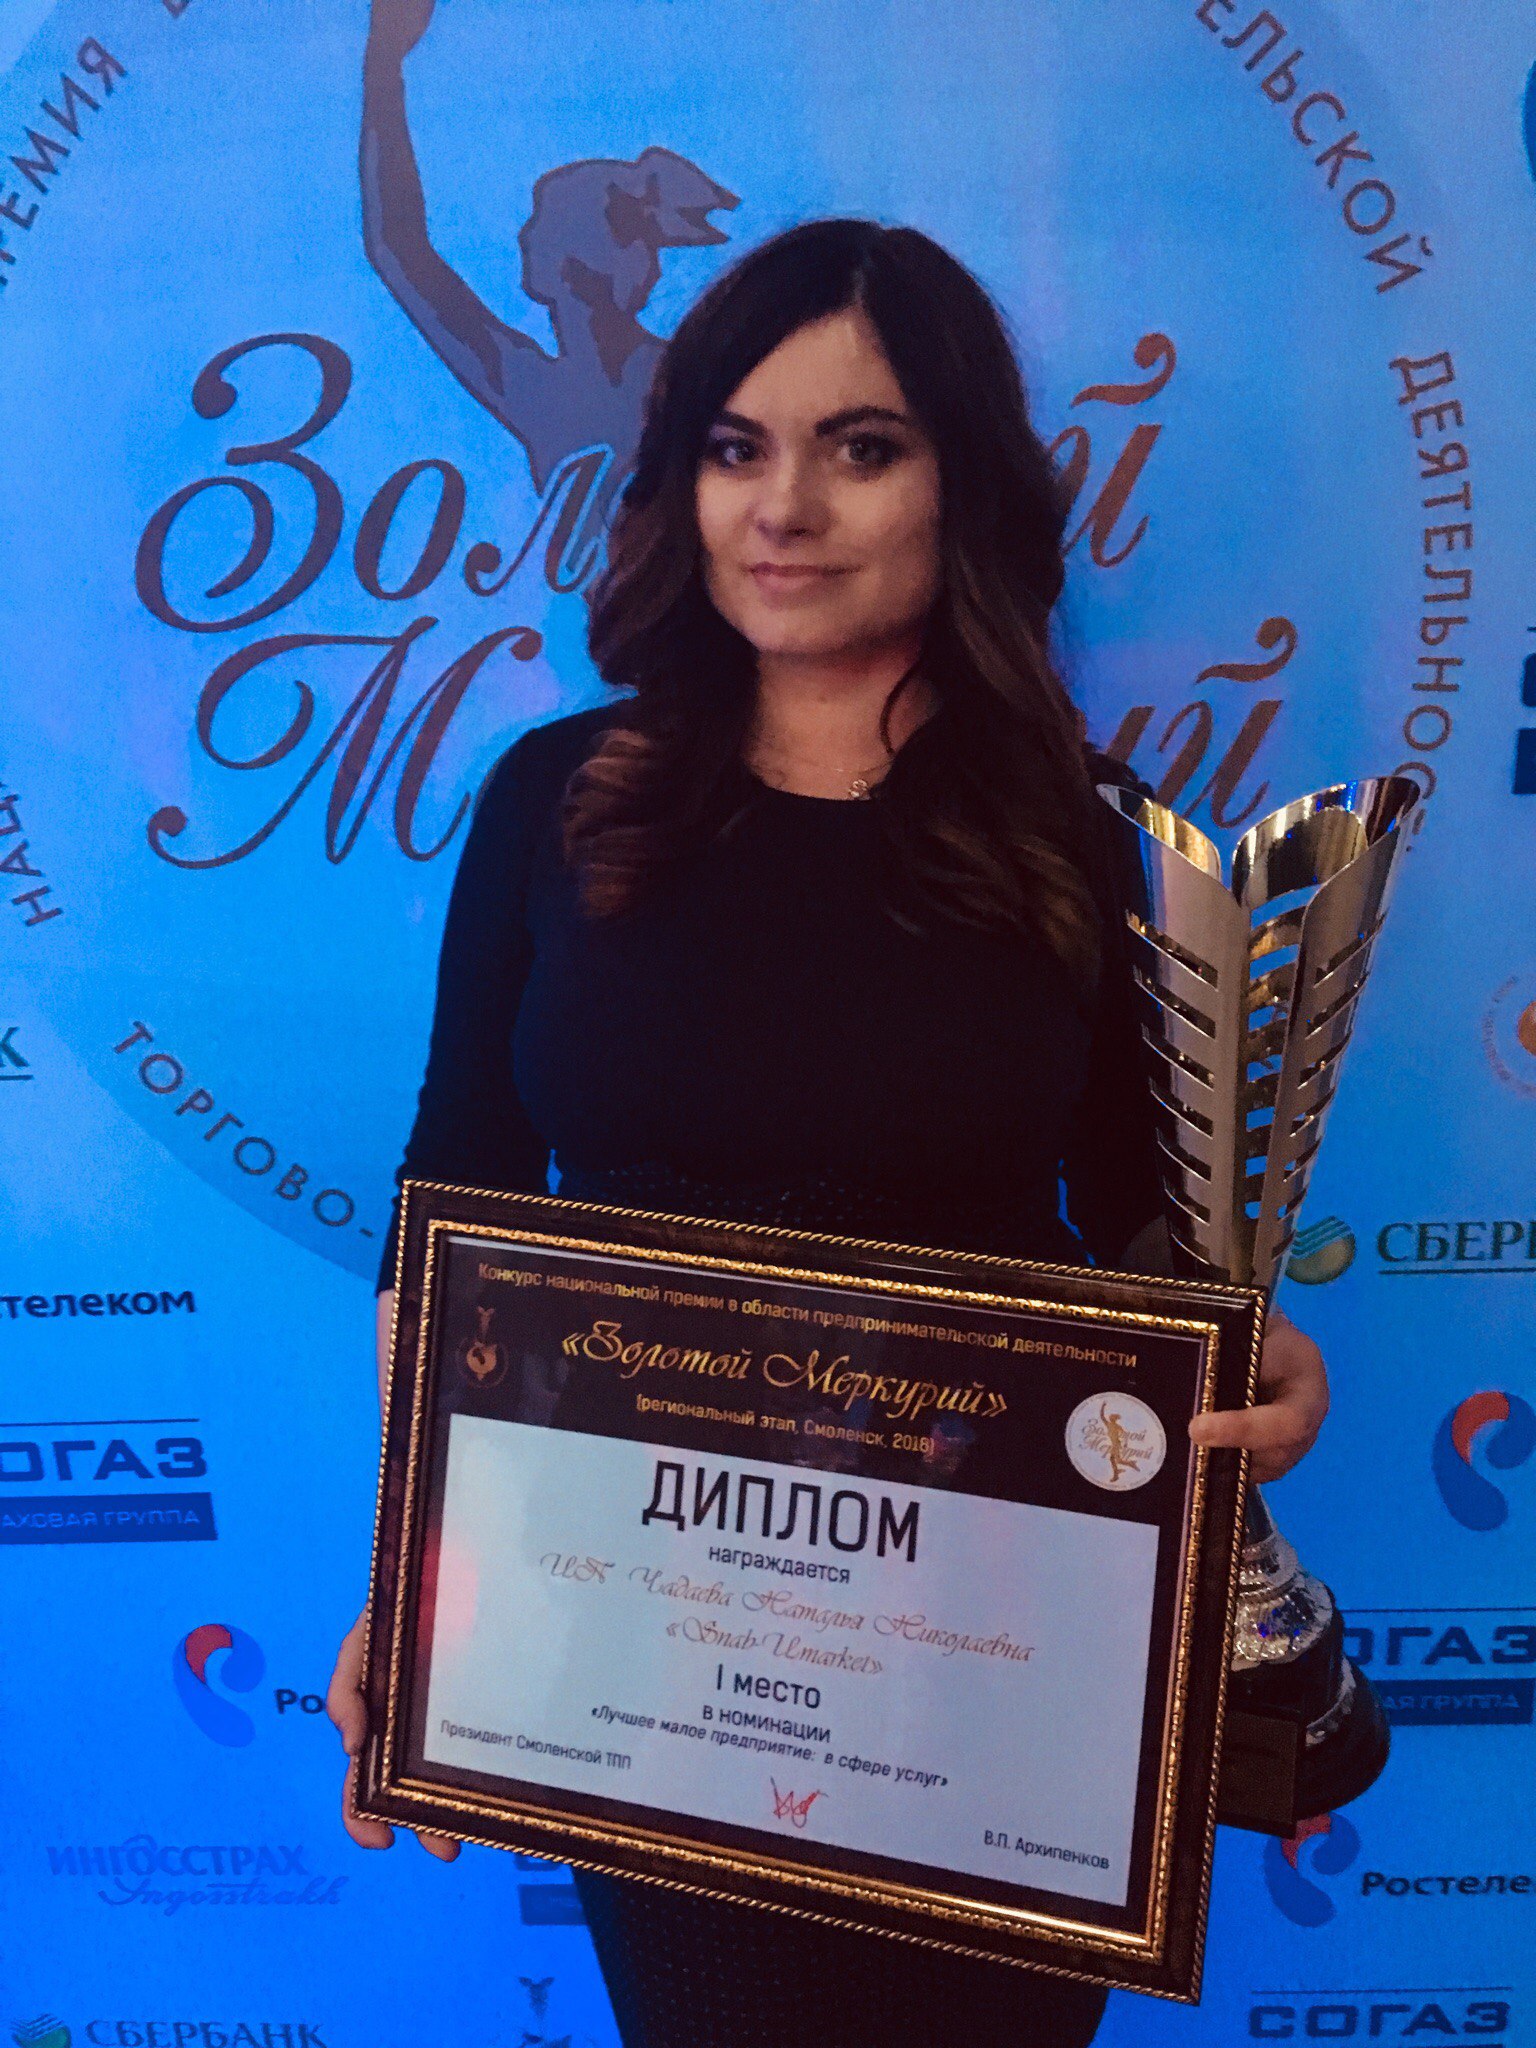  Компания Snab-Umarket завоевала 1 МЕСТО в номинации 